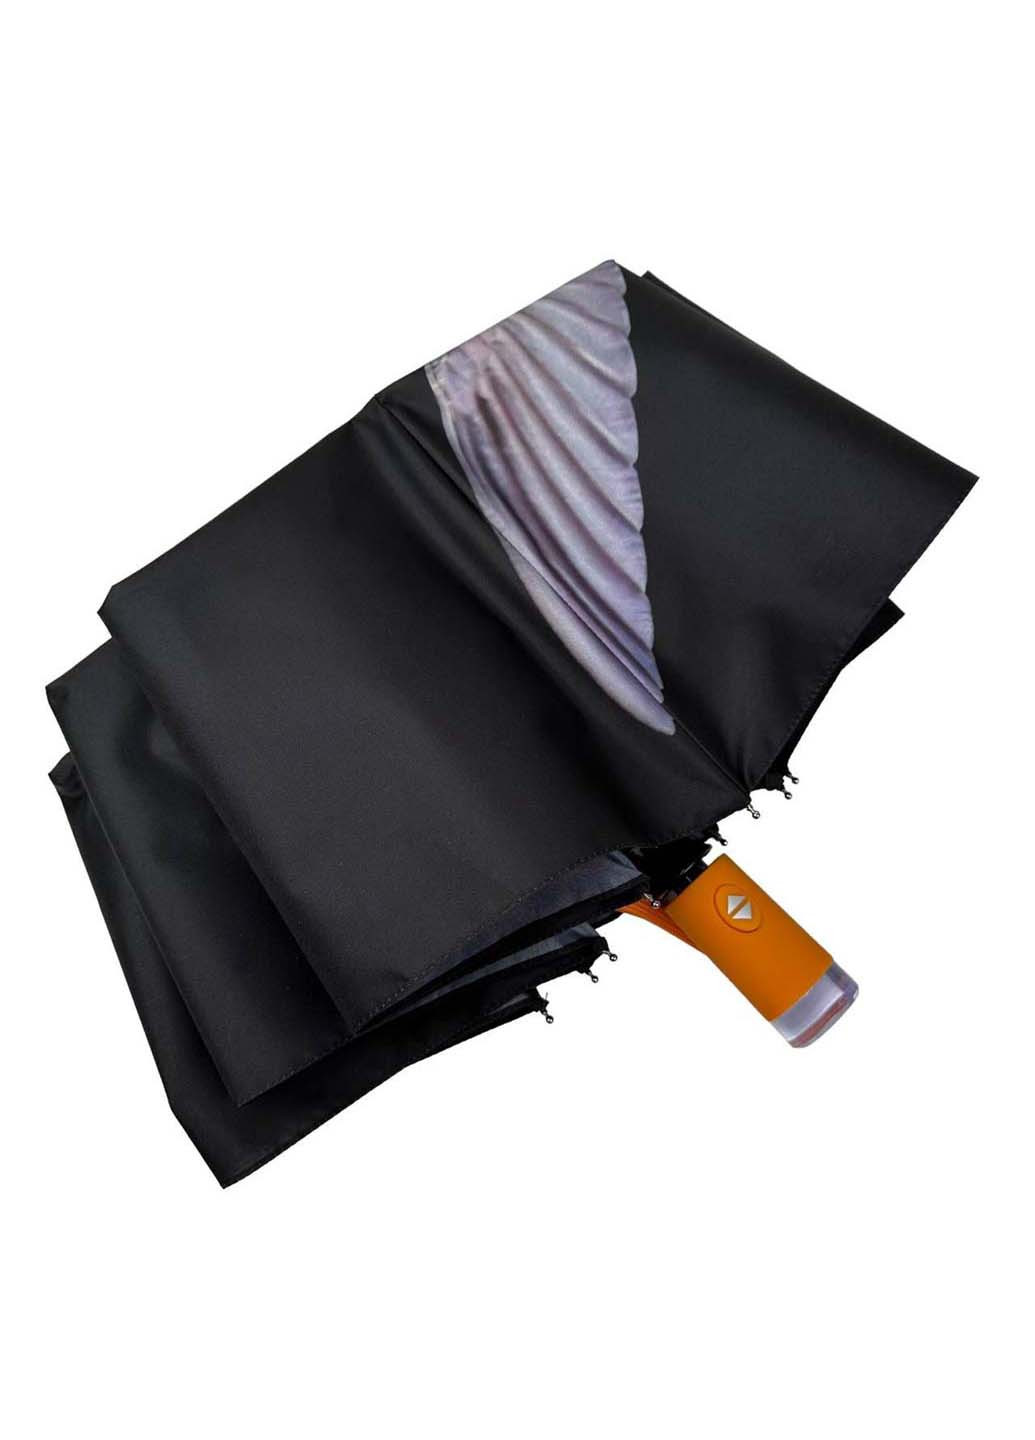 Жіноча парасолька-автомат у подарунковій упаковці з хустинкою Rain (265992237)